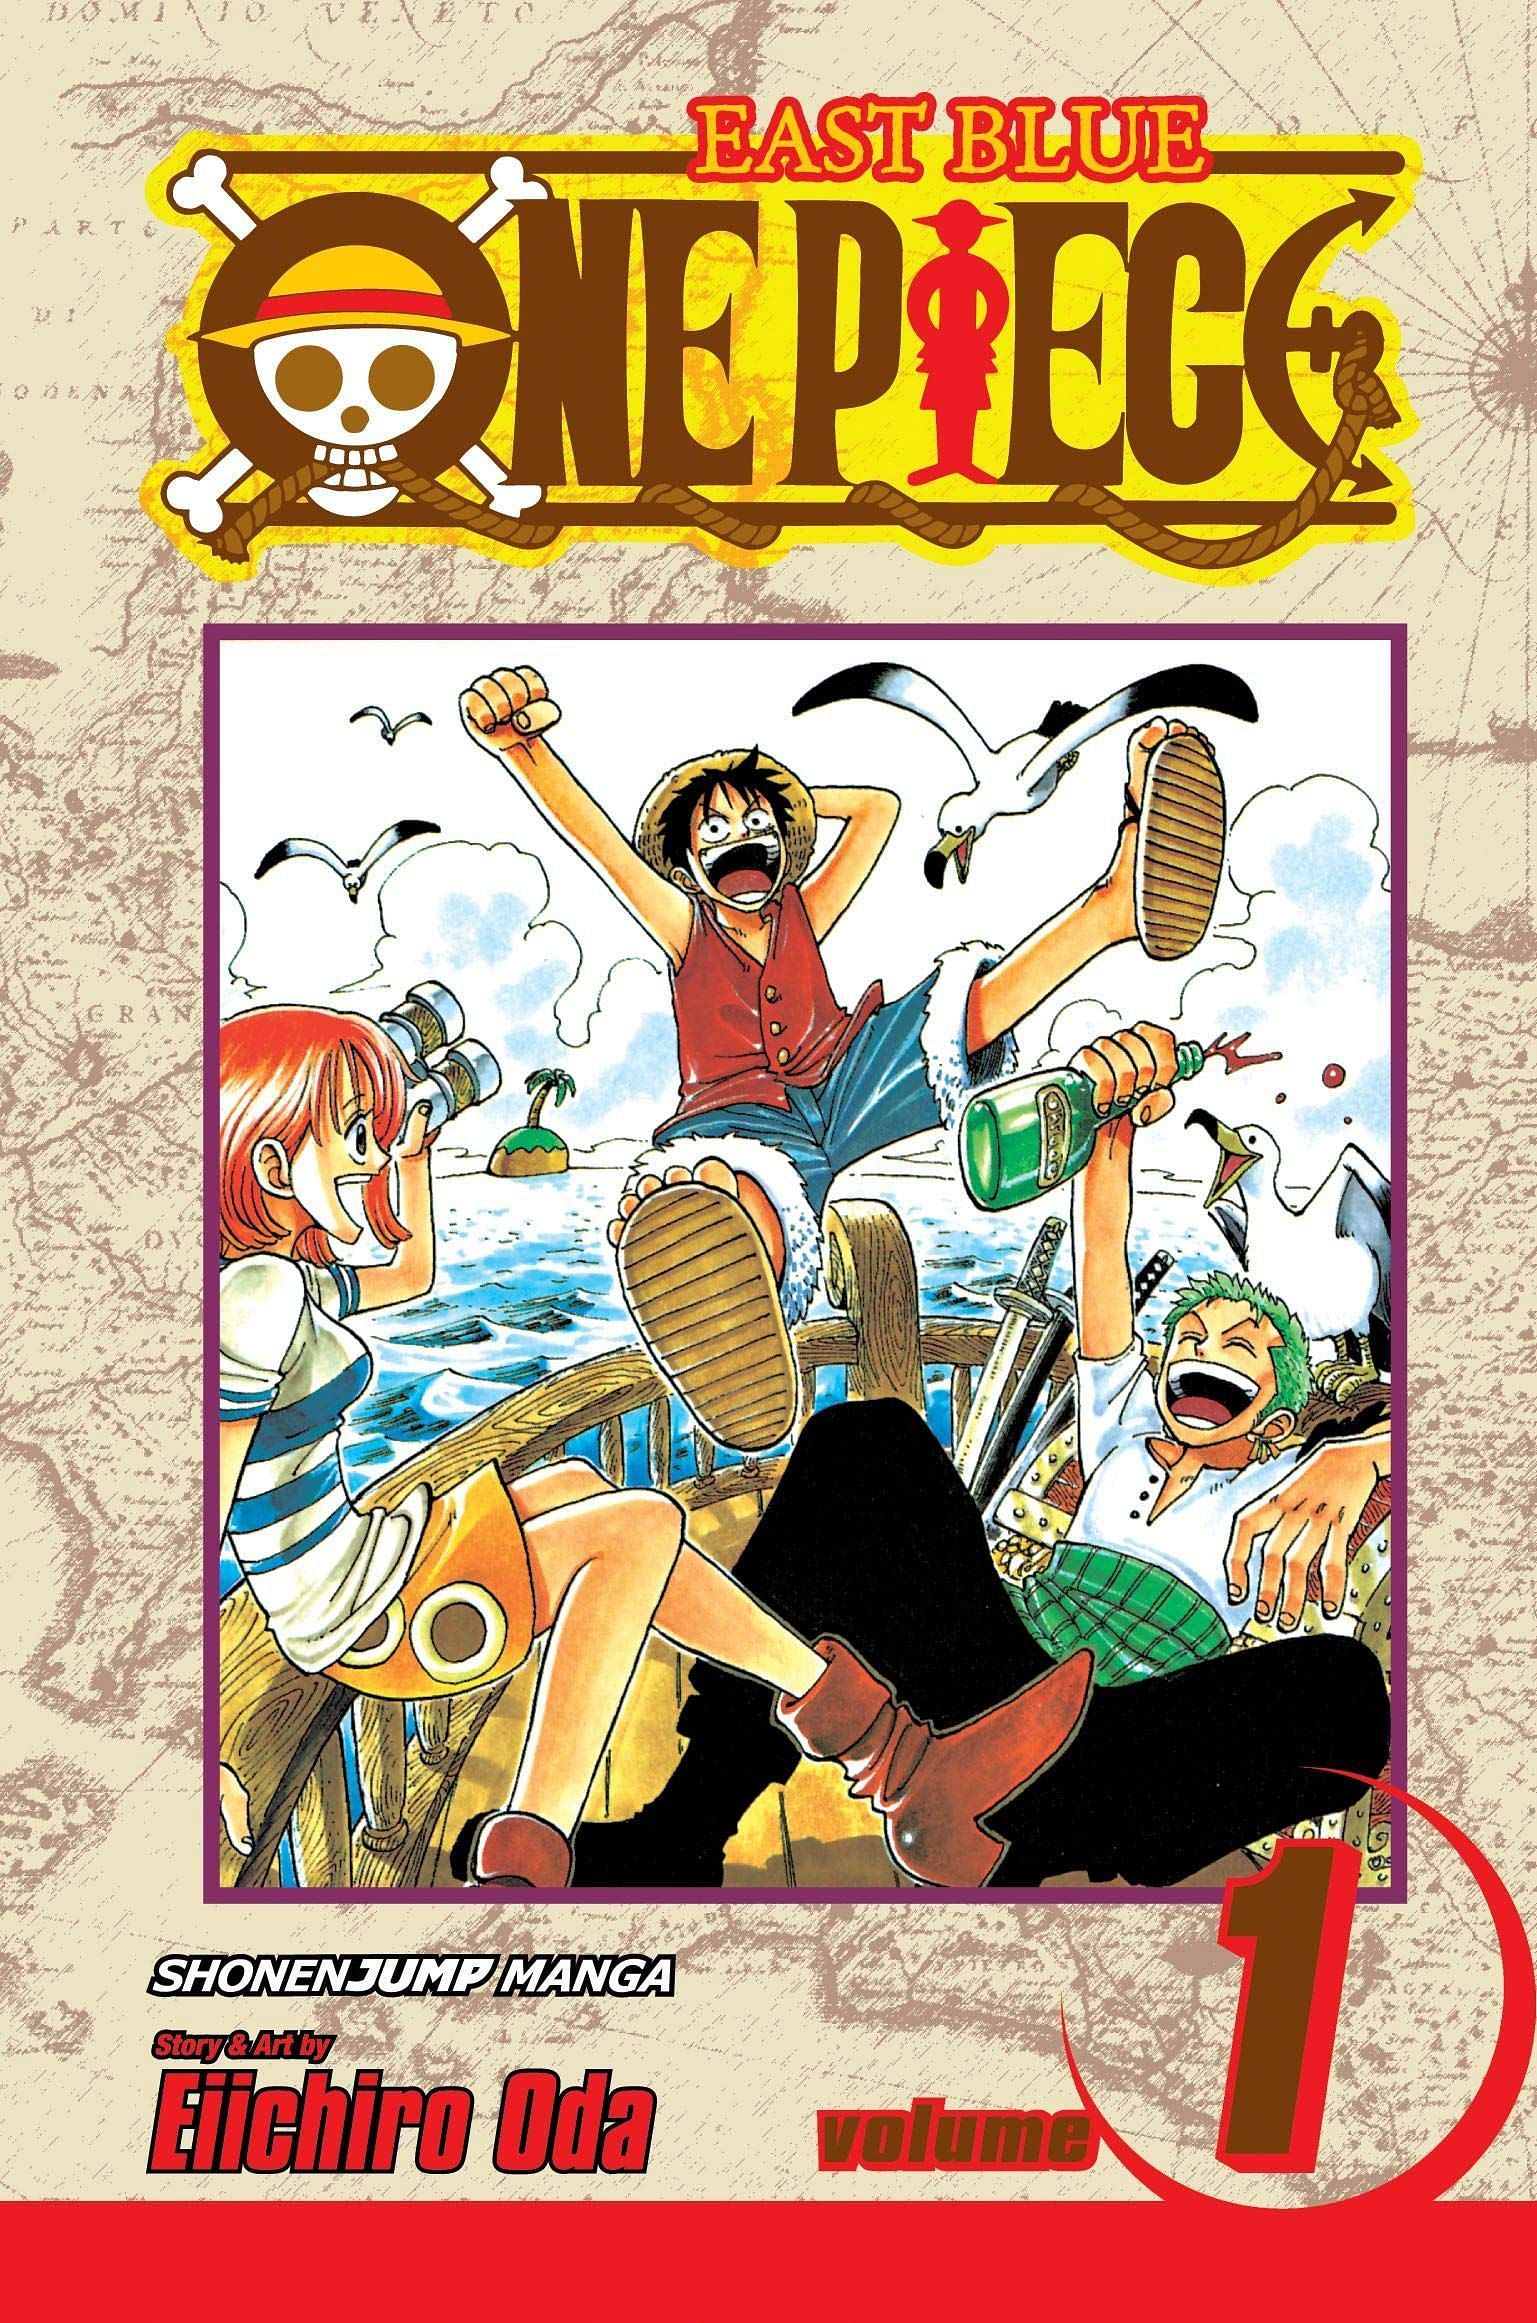 The cover art for One Piece Volume 1 (Image via Shueisha)